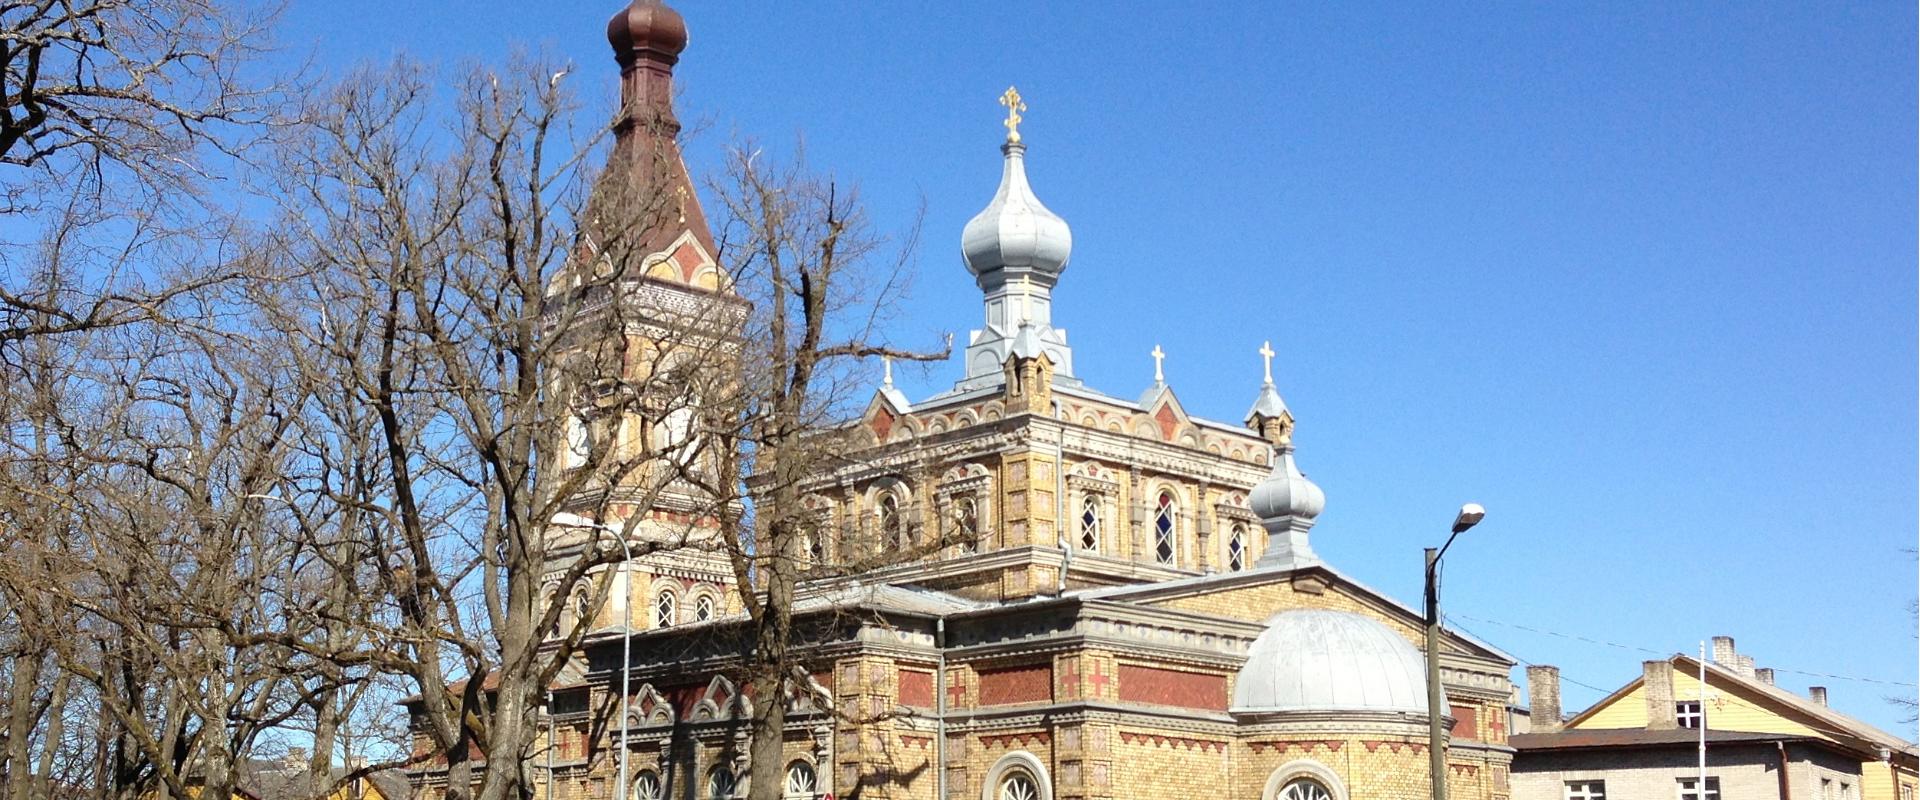 Viron apostolisen ortodoksiuskon Pärnun Jumalan muuttamisen kirkko